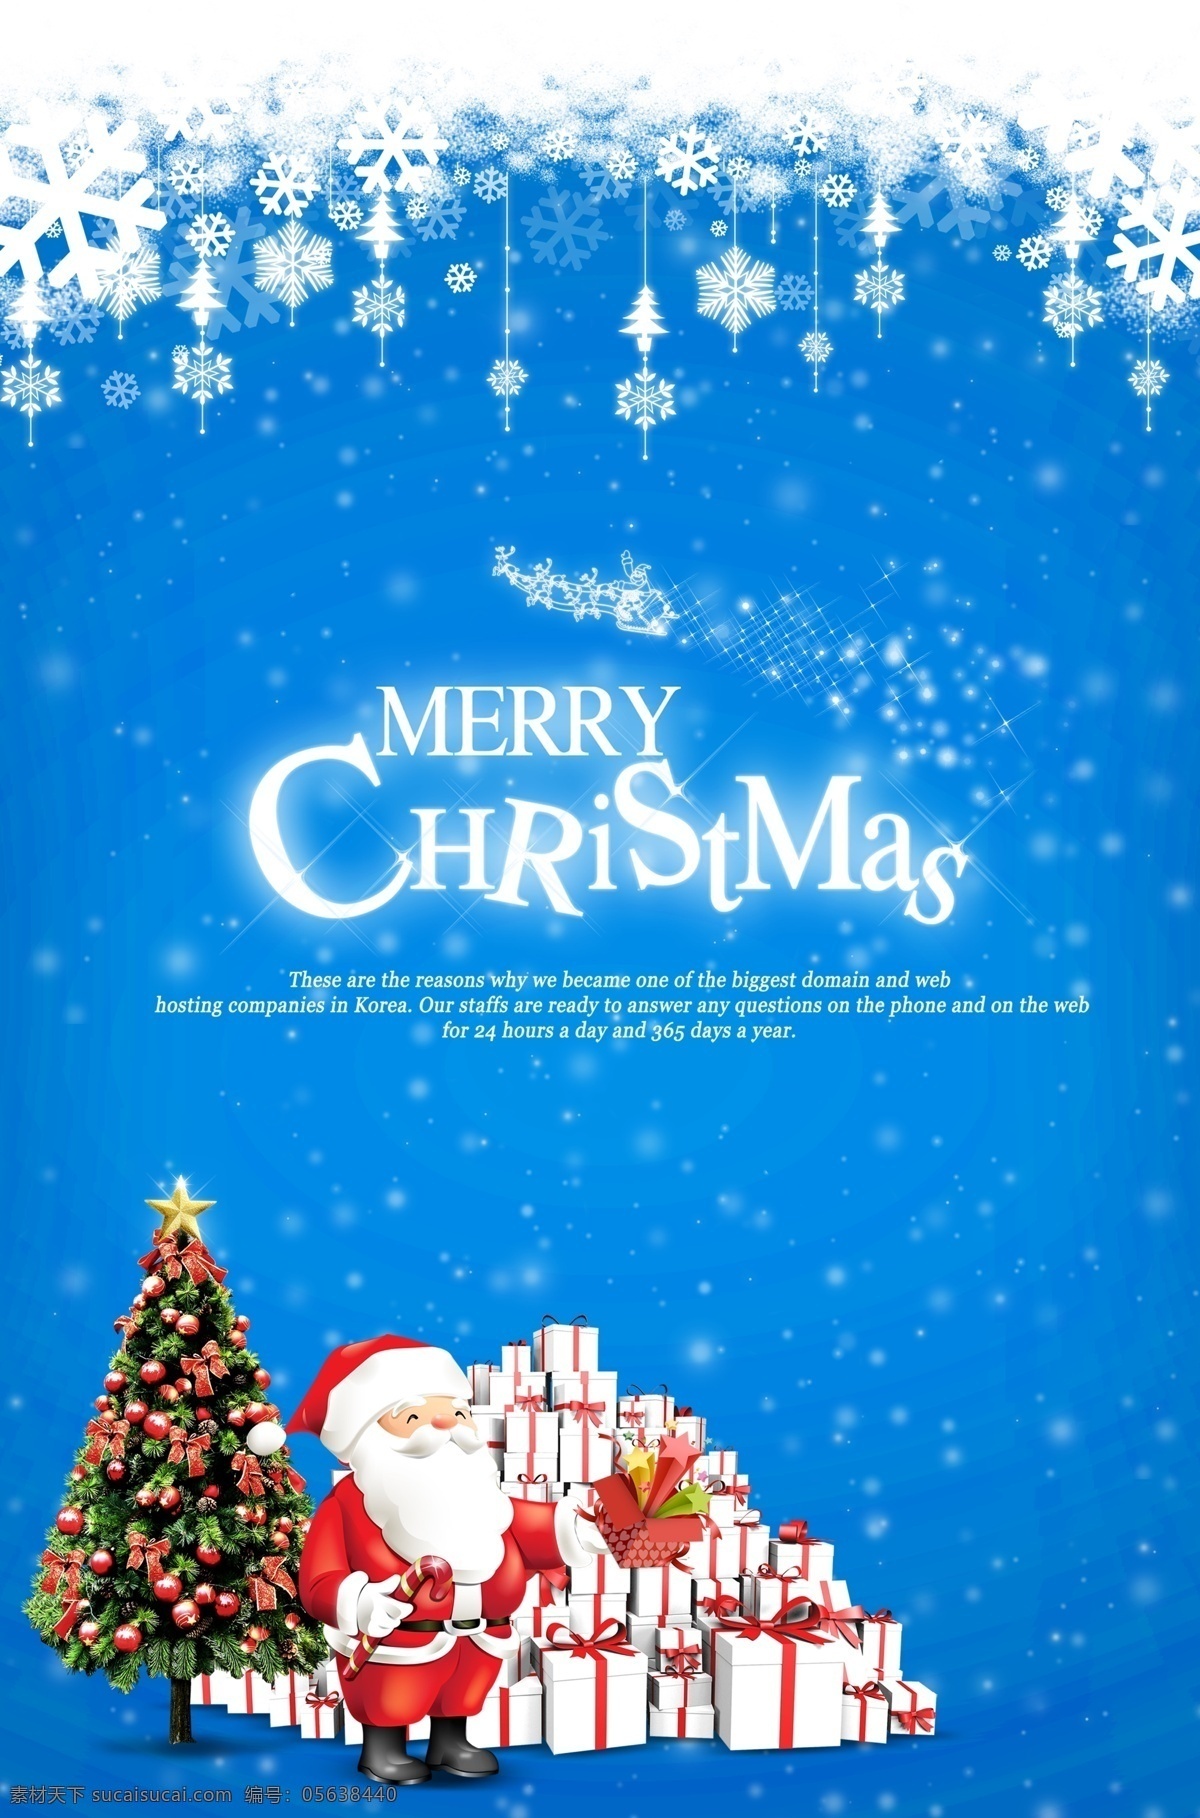 圣诞老人 送礼 物 场景 宣传 文案 海报 送礼物 圣诞节 蓝色